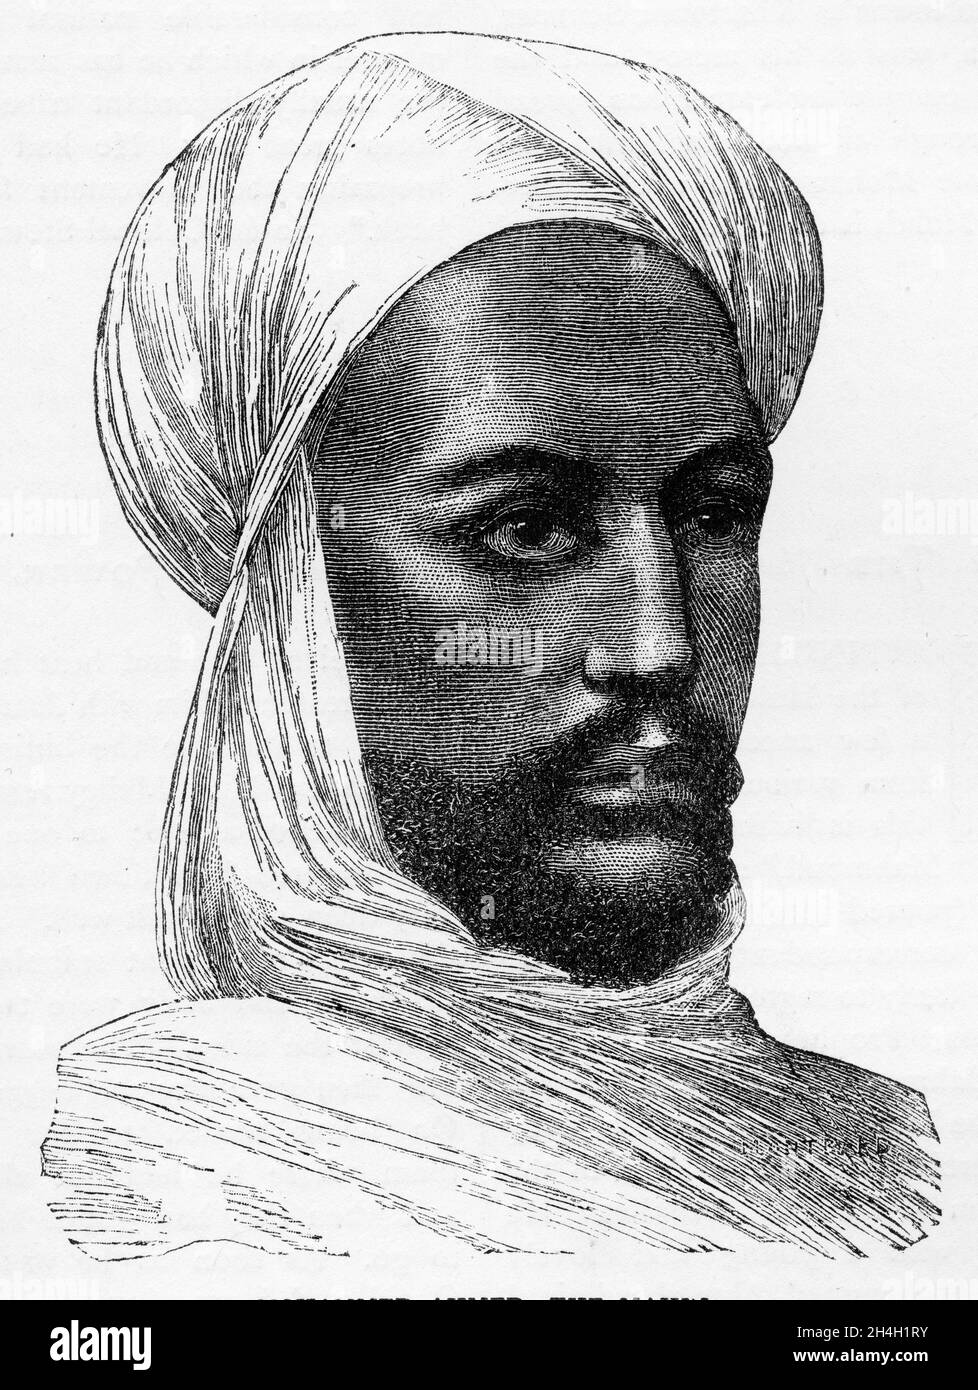 Stich von Muhammad Ahmad (1844-1885) Sudanesischer Religionsführer und selbst ernannter Mahdi, der gegen Generalmajor Charles George Gordon kämpfte Stockfoto